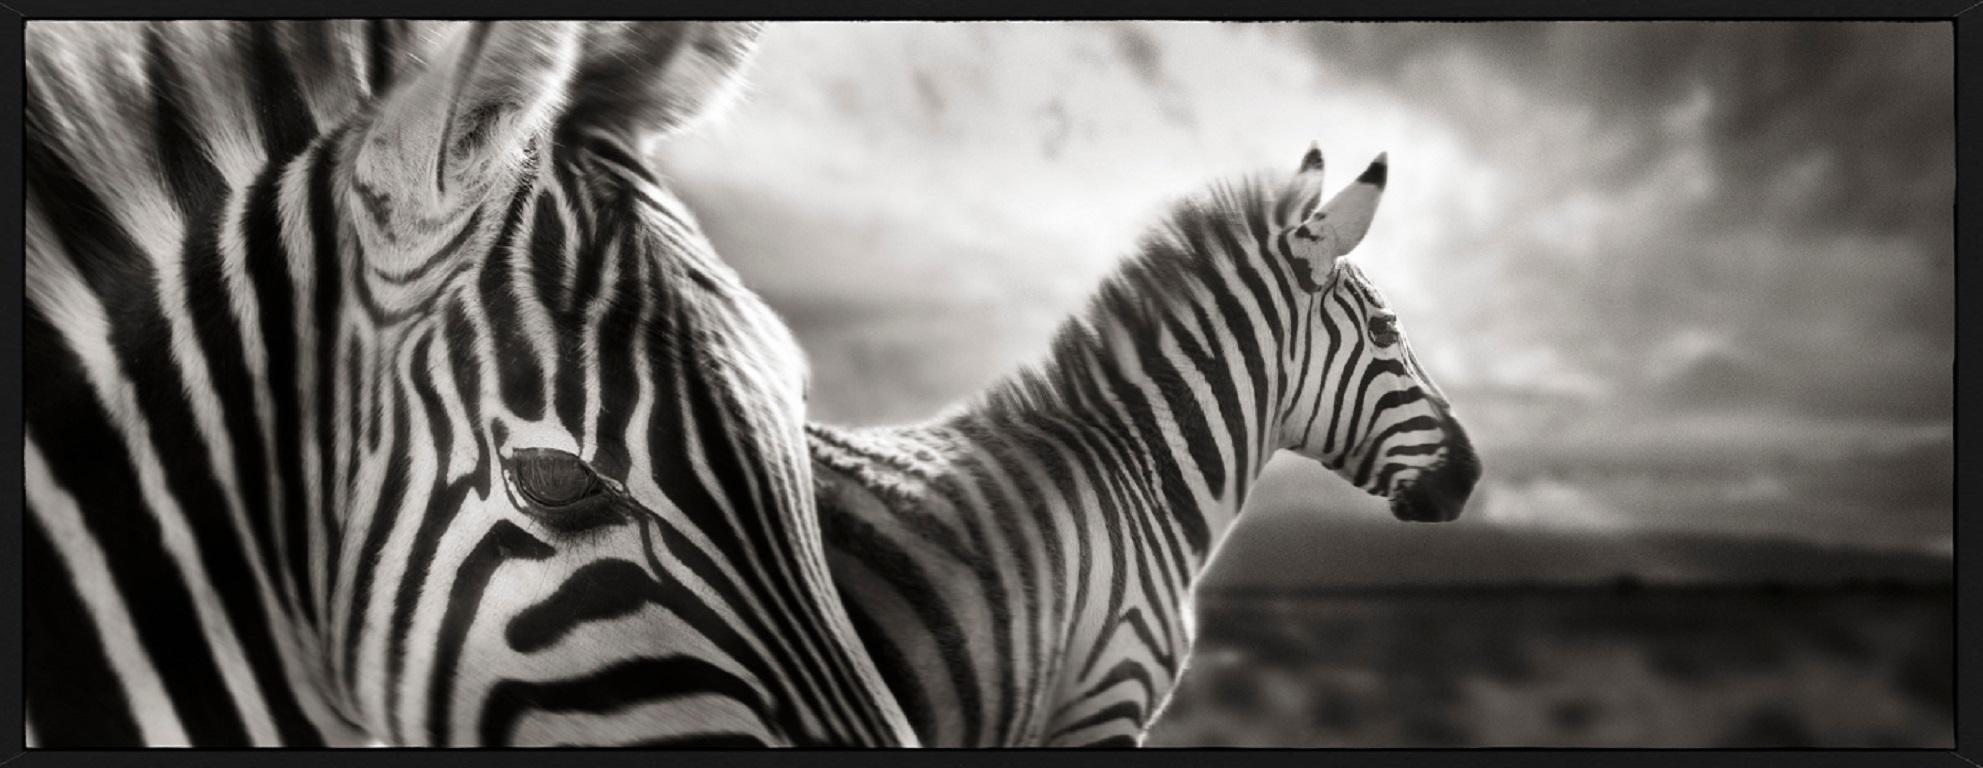 Zebra Duo – Nahaufnahme von Kunstfotografie von zwei Zebras in Landschaft, Tierwelt – Photograph von Joachim Schmeisser